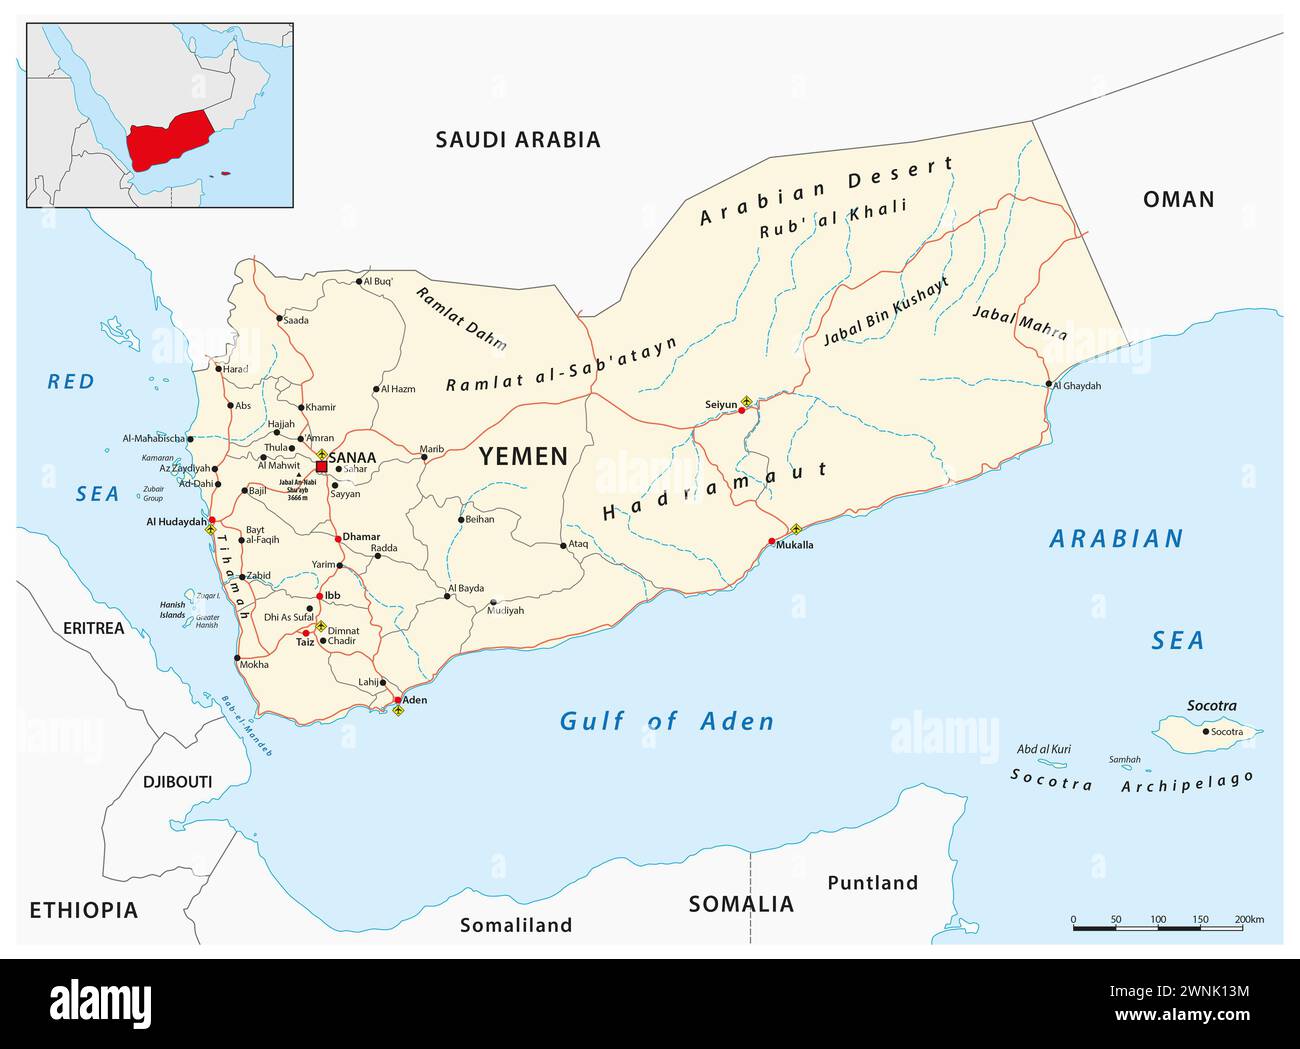 Detaillierte Vektor-Roadmap des Staates Jemen im Nahen Osten Stockfoto